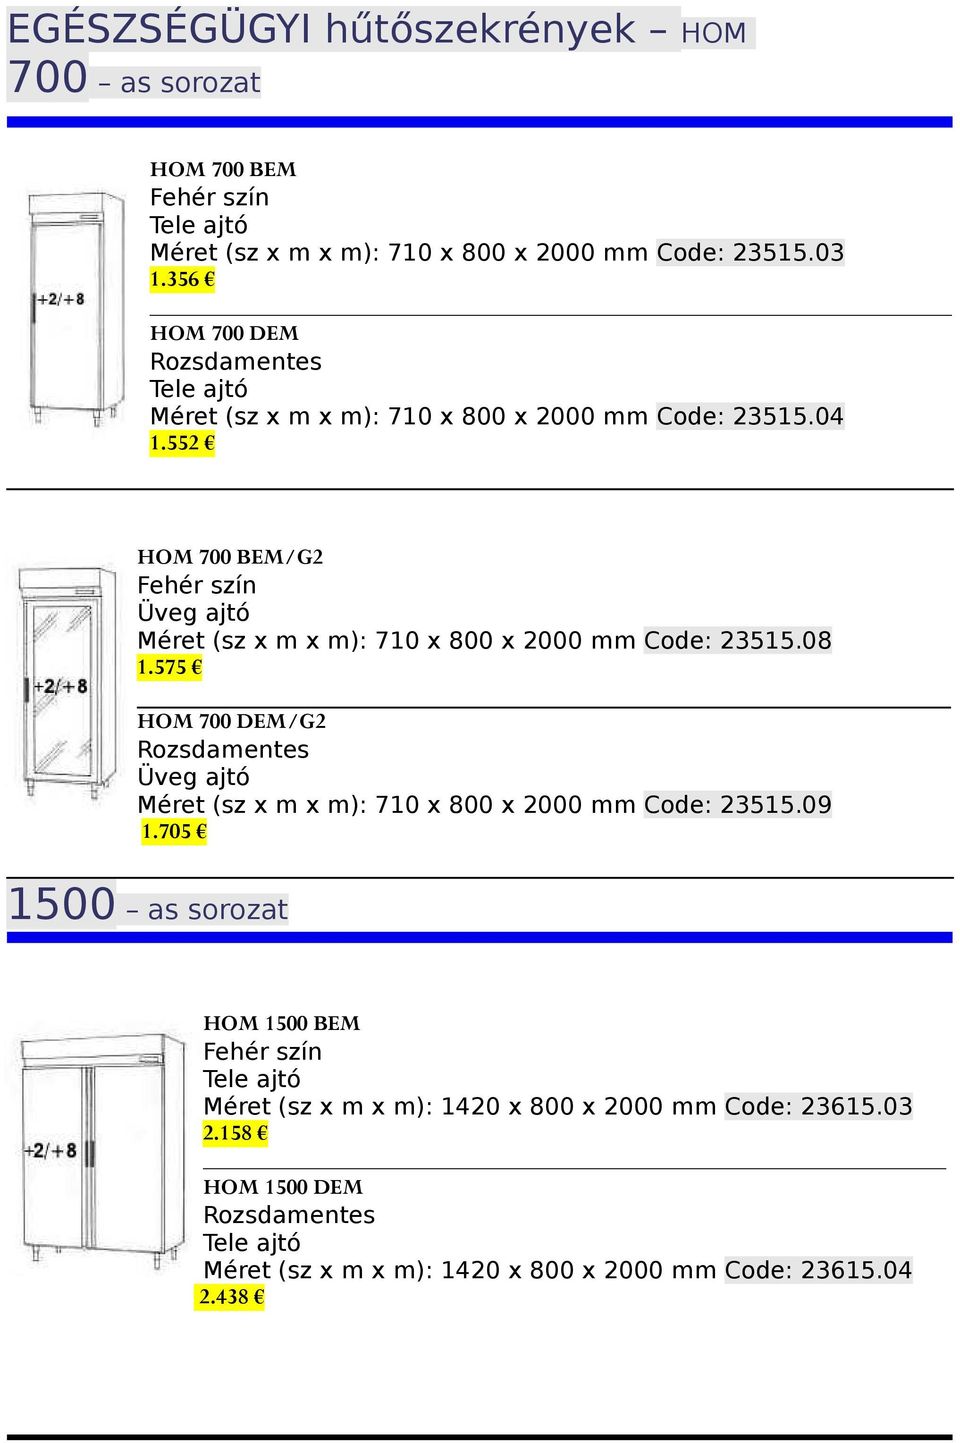 552 HOM 700 BEM/G2 Méret (sz x m x m): 710 x 800 x 2000 mm Code: 23515.08 1.